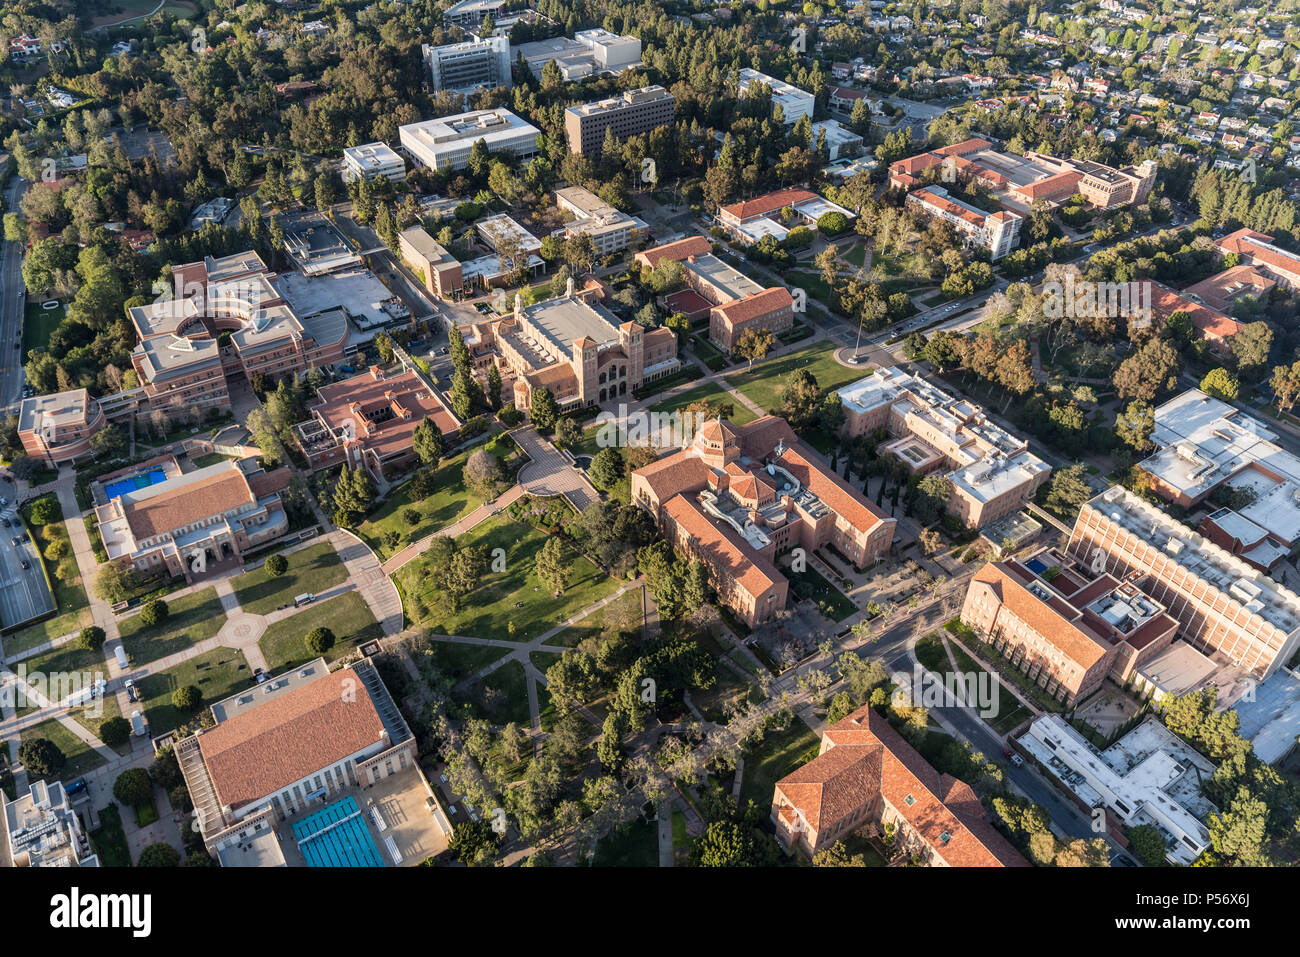 Los Angeles, Californie, USA - 18 Avril 2018 : Vue aérienne des bâtiments sur le campus de l'UCLA près de Westwood. Banque D'Images